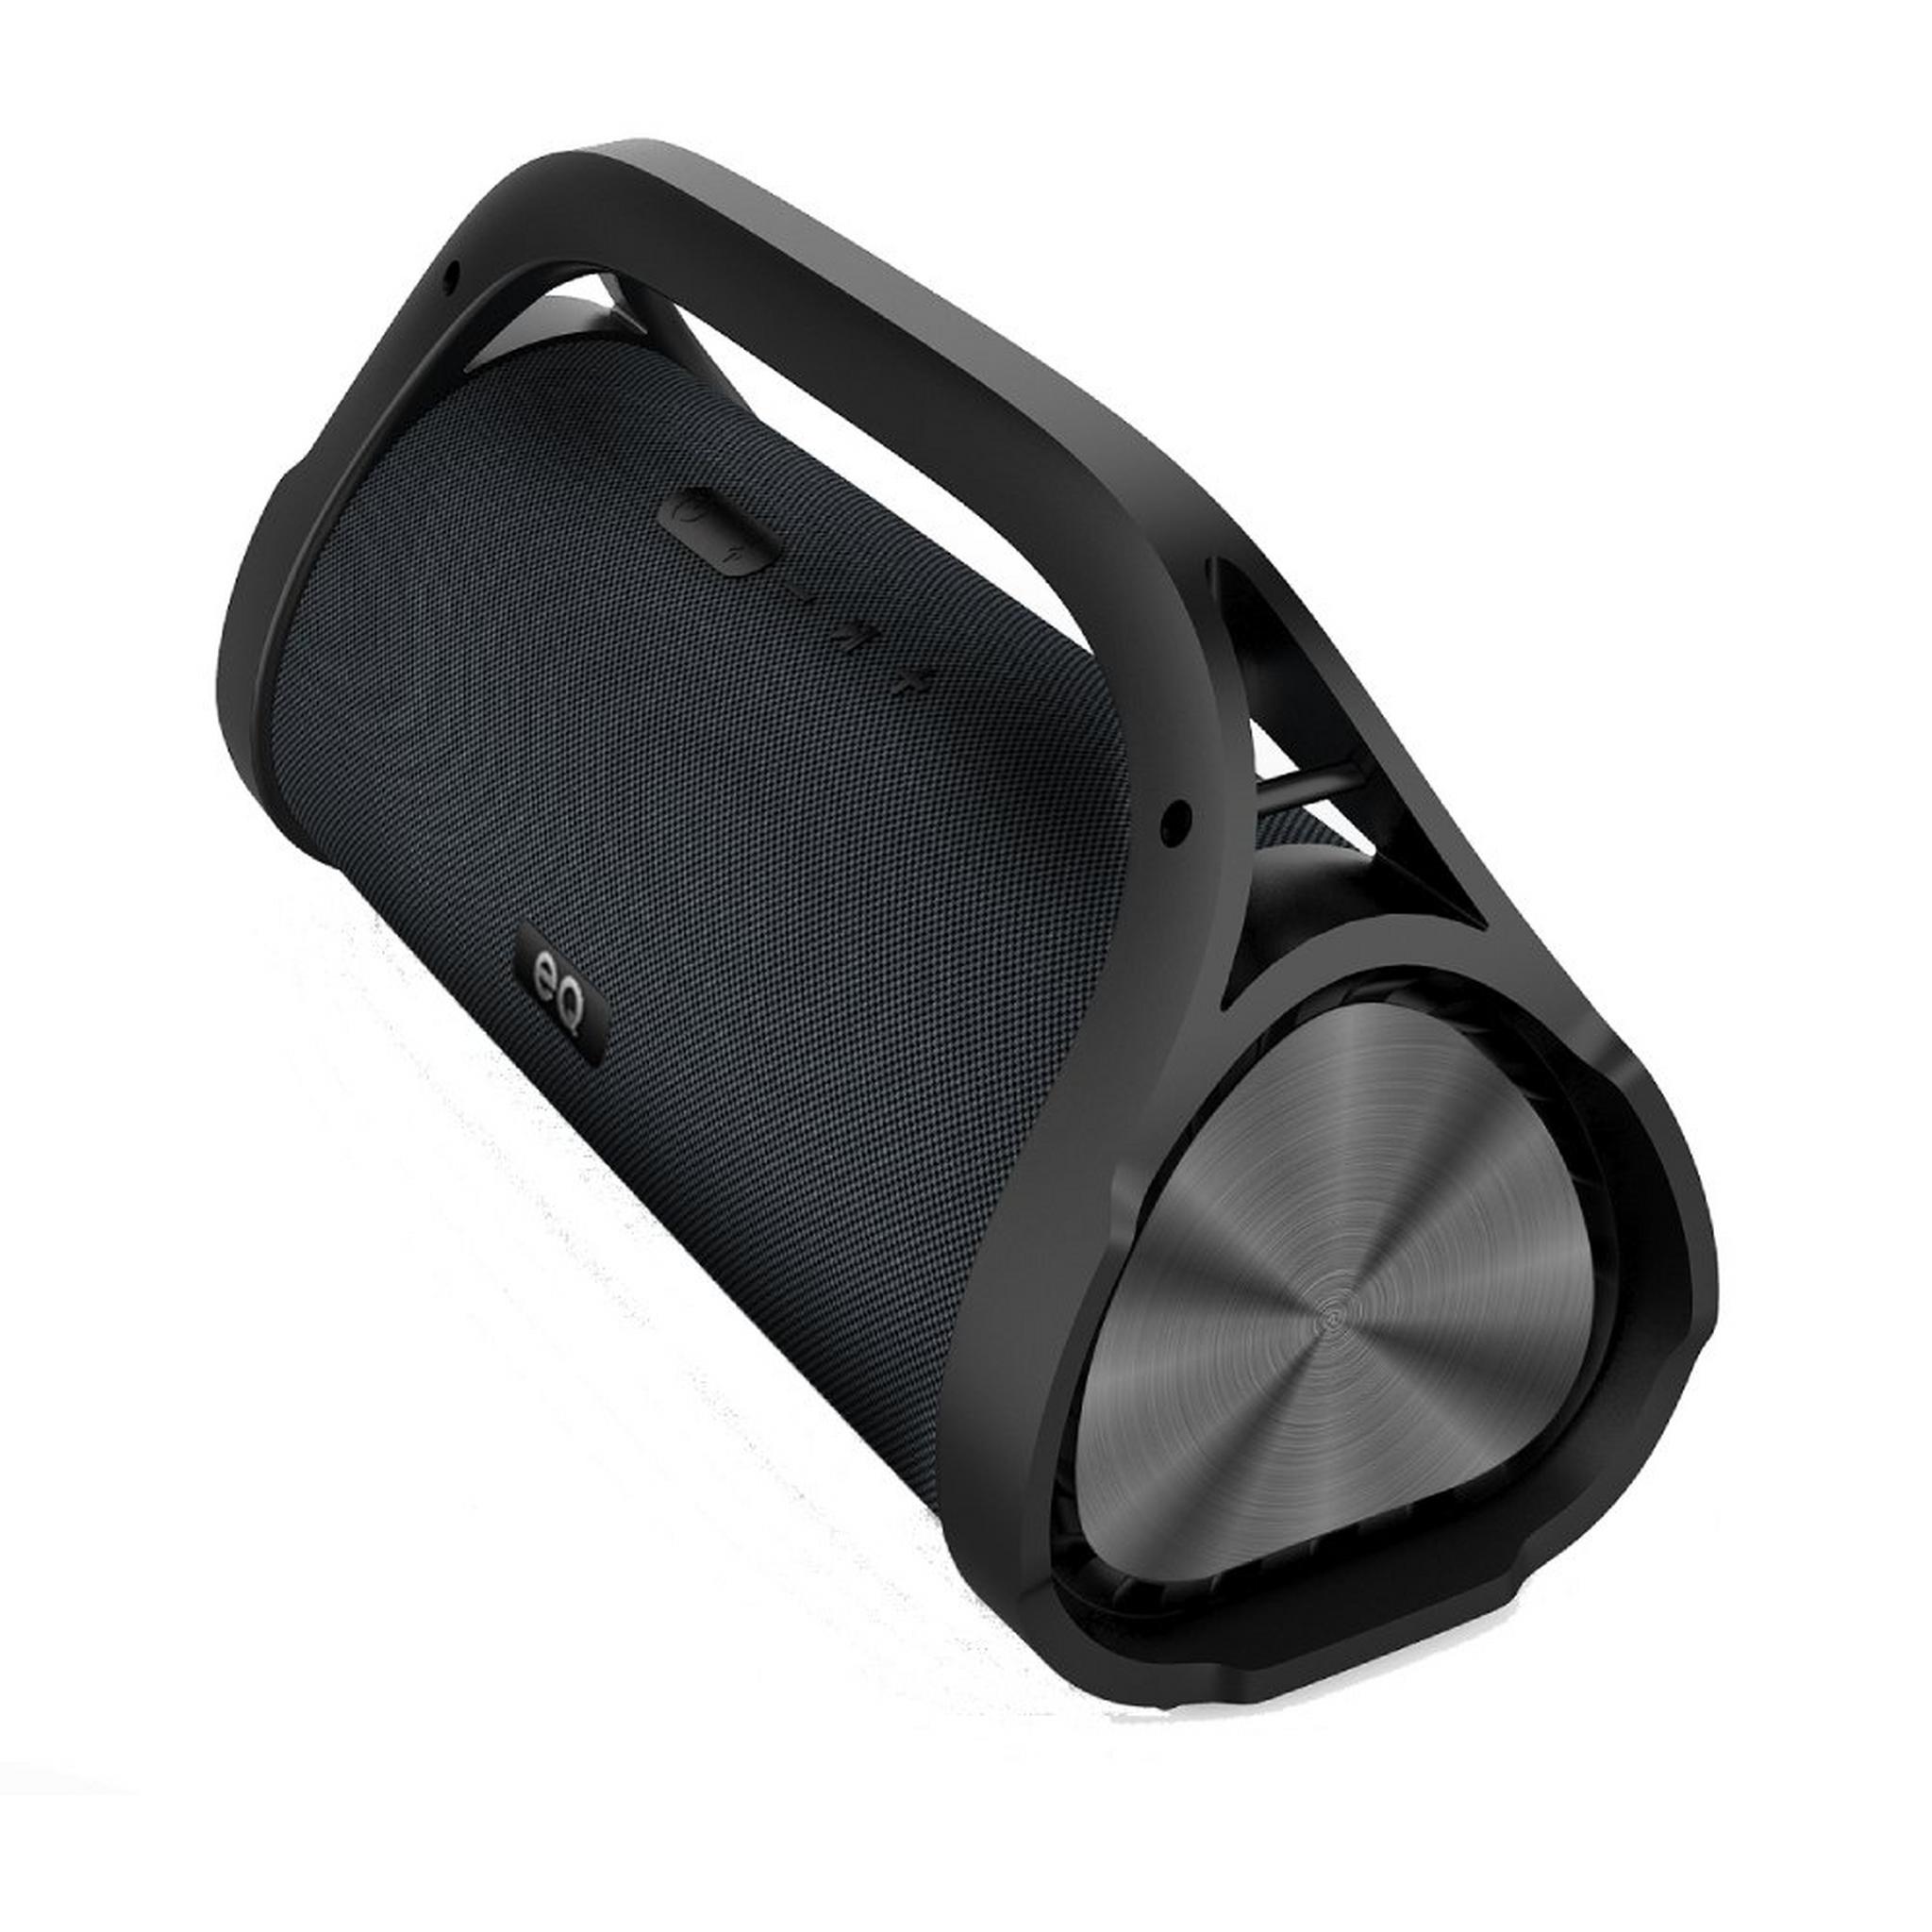 EQ Boombox Speaker (E10) - Black